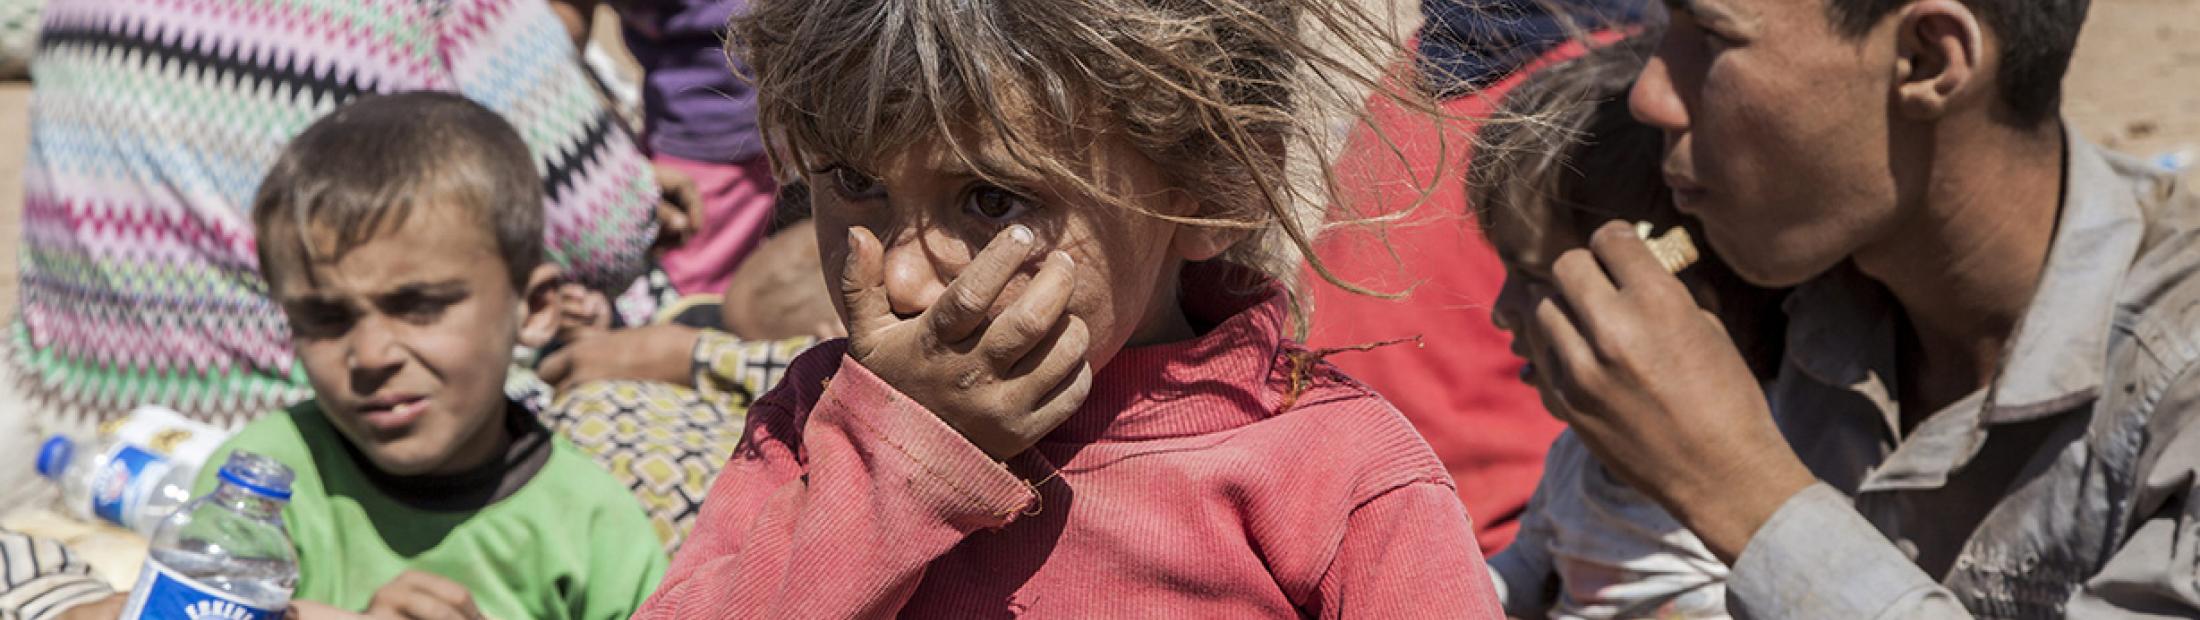 ACNUR refuerza el envío de ayuda a los desplazados en Siria con la llegada del invierno